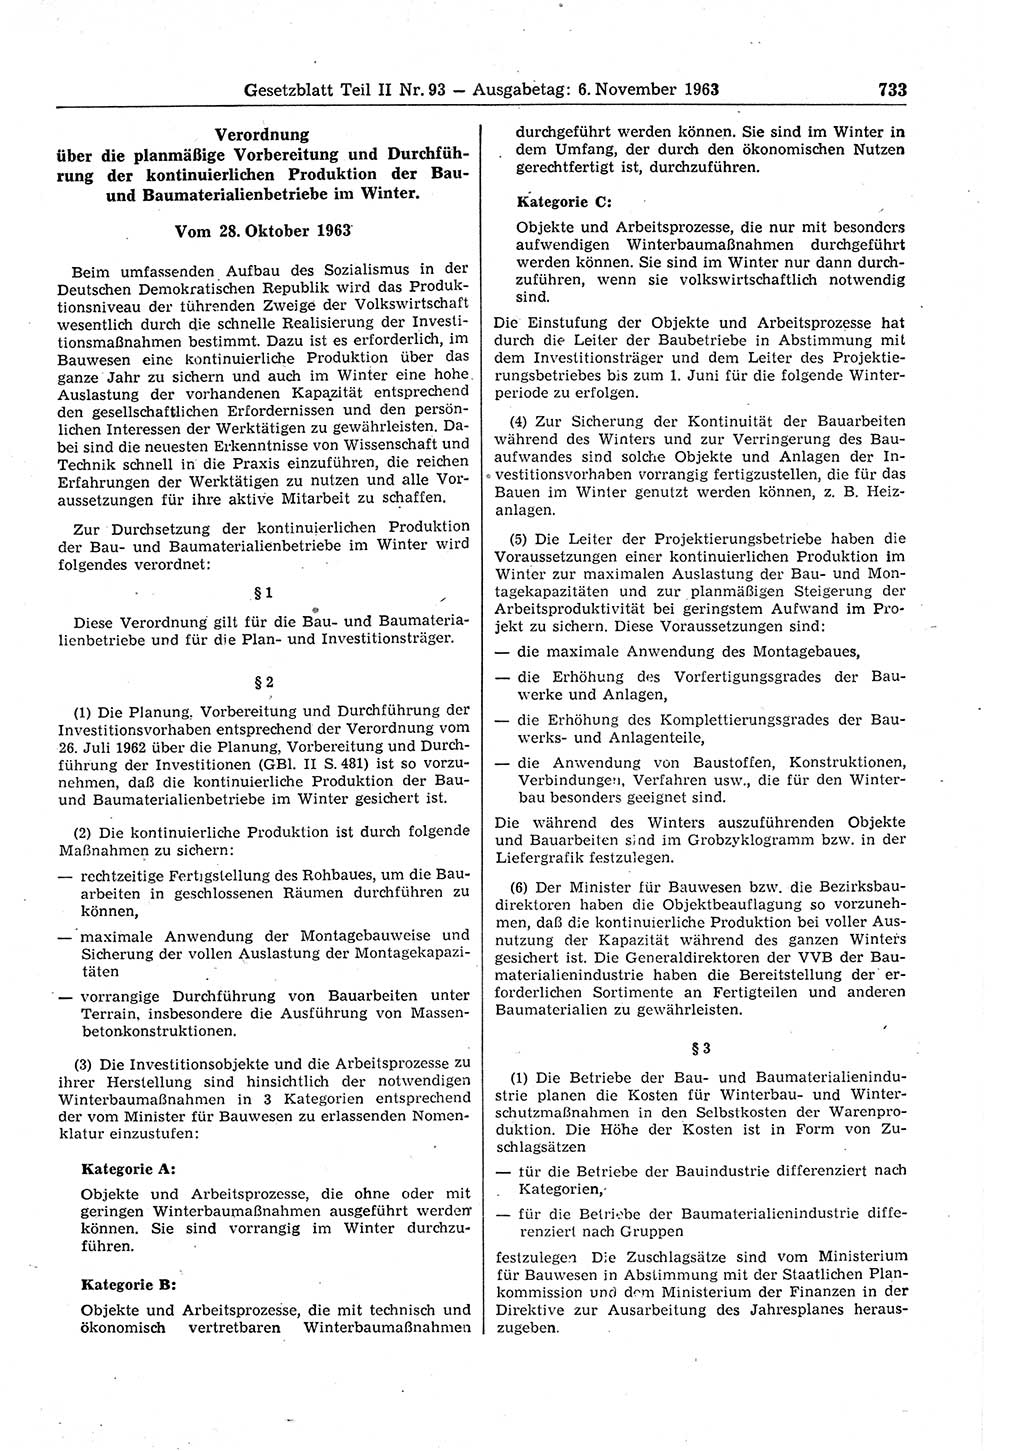 Gesetzblatt (GBl.) der Deutschen Demokratischen Republik (DDR) Teil ⅠⅠ 1963, Seite 733 (GBl. DDR ⅠⅠ 1963, S. 733)